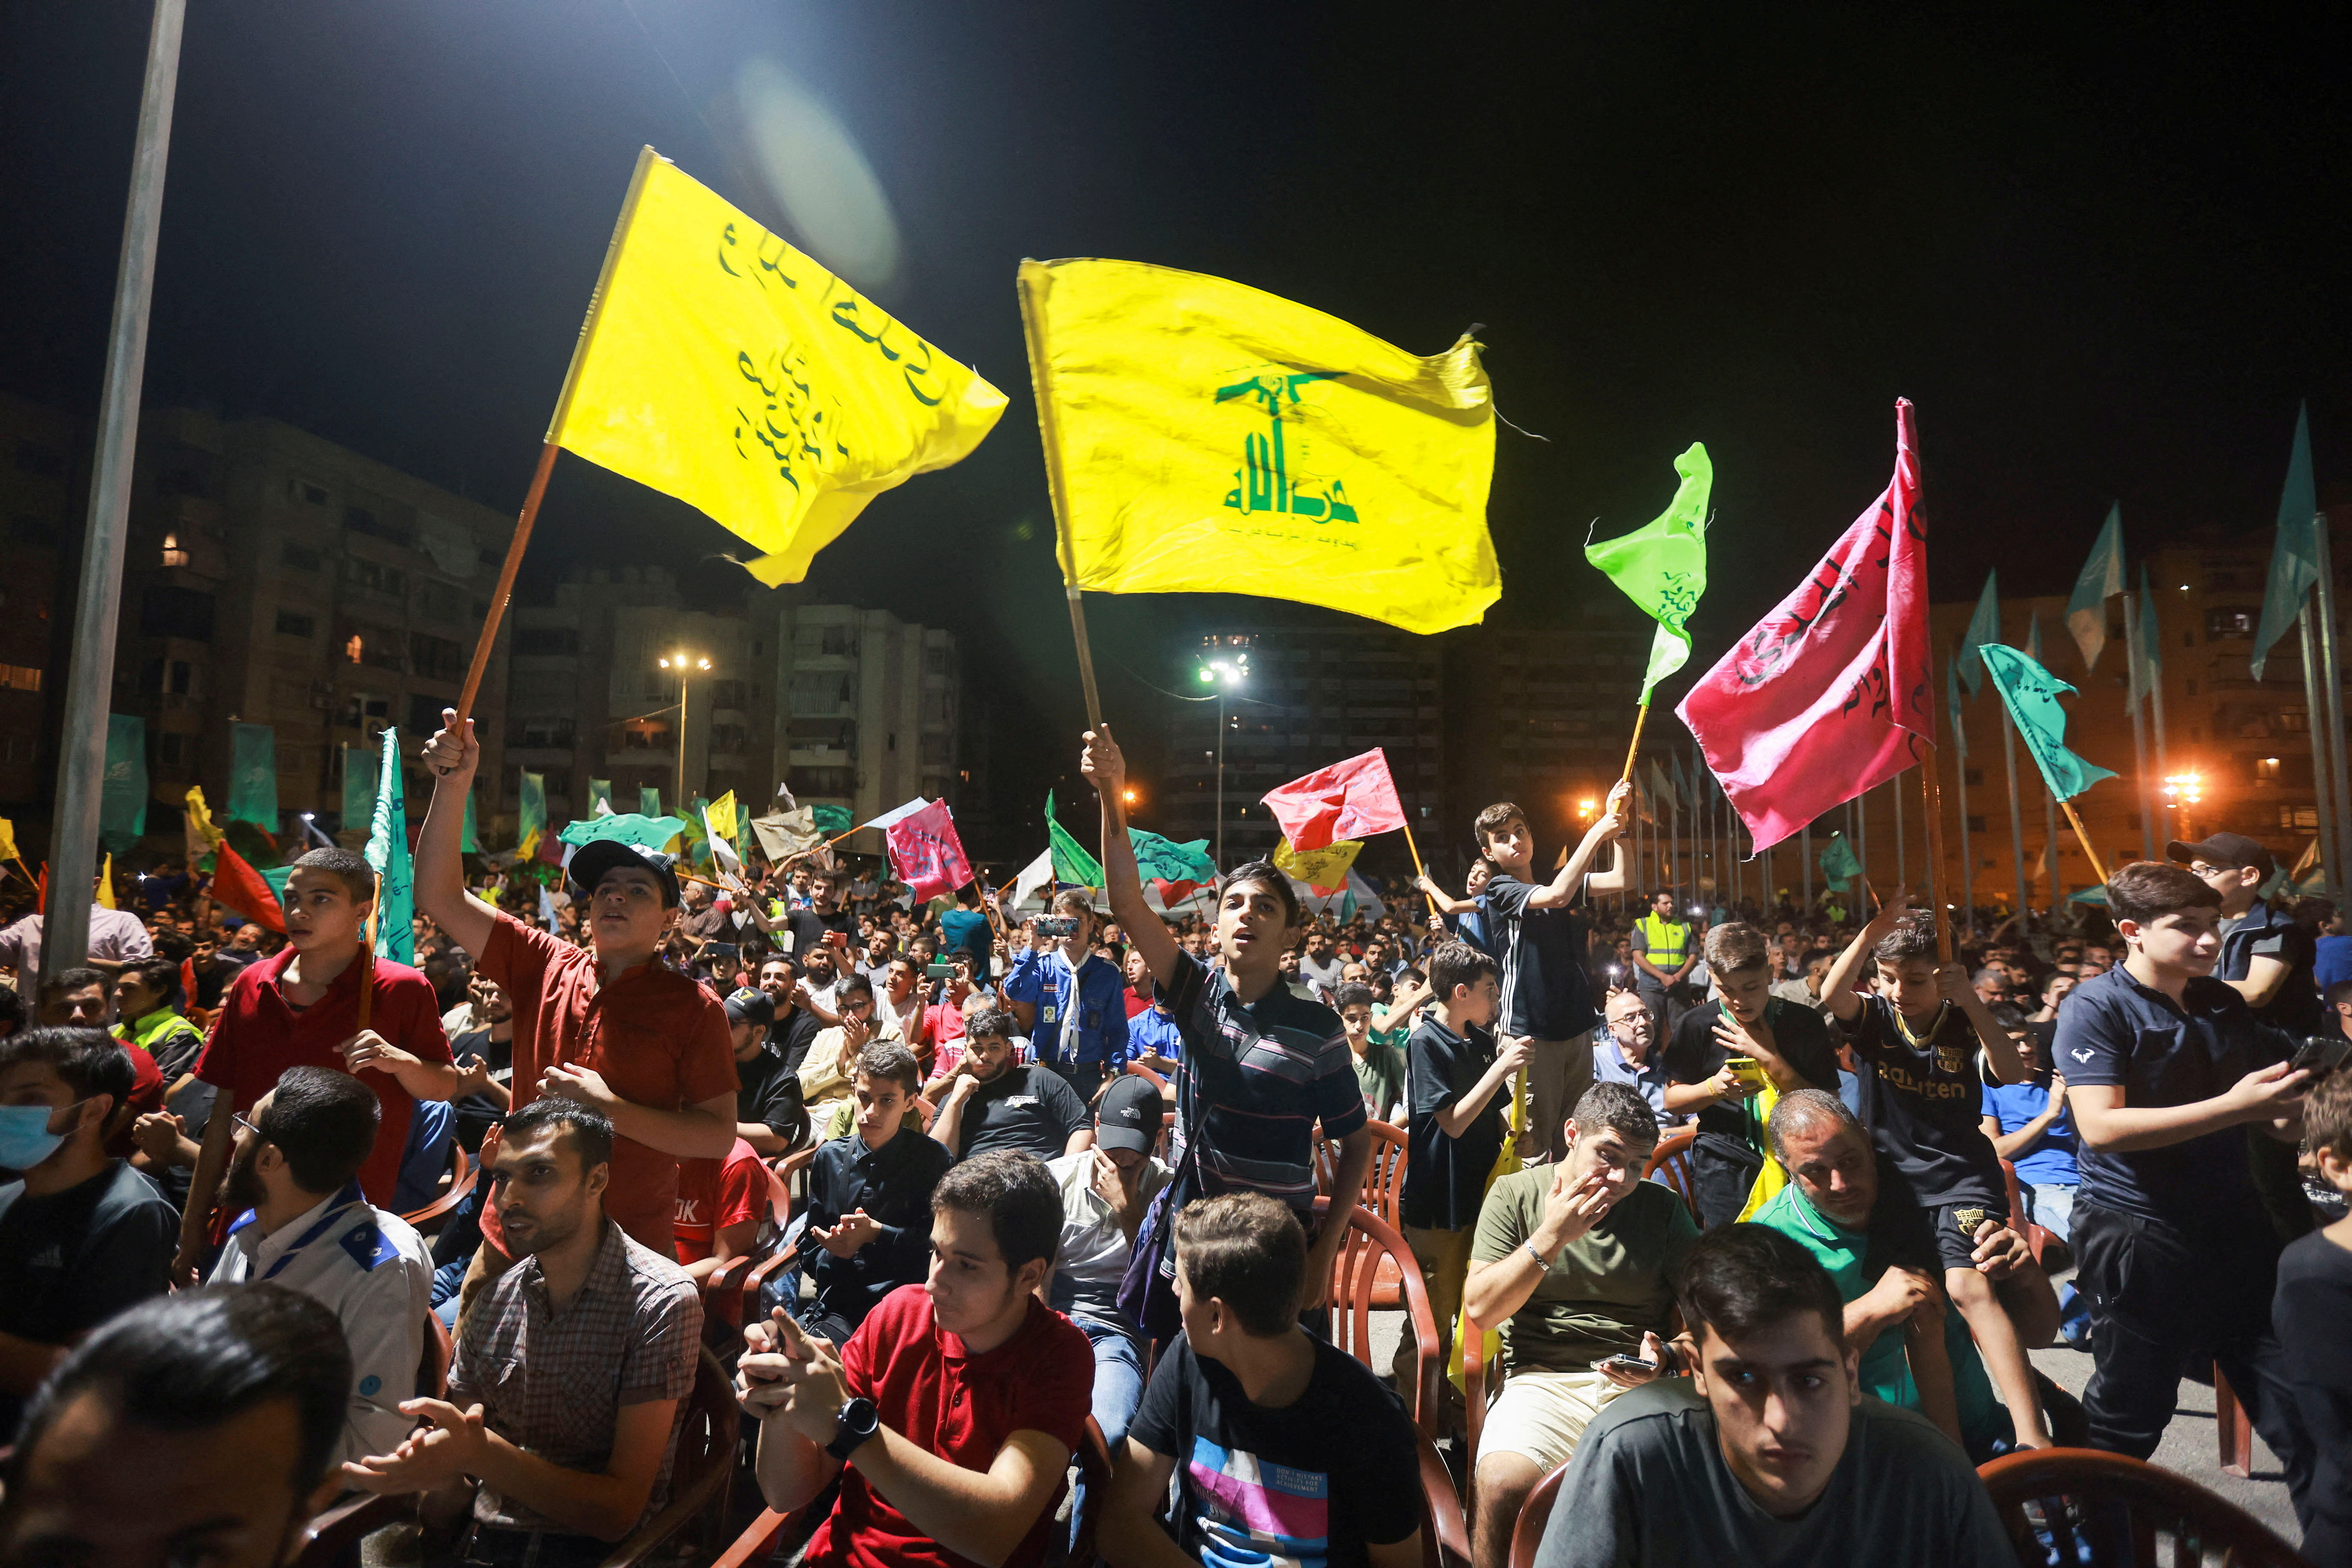 Estados Unidos sancionó a 52 individuos y organizaciones vinculados a la organización terrorista Hezbollah